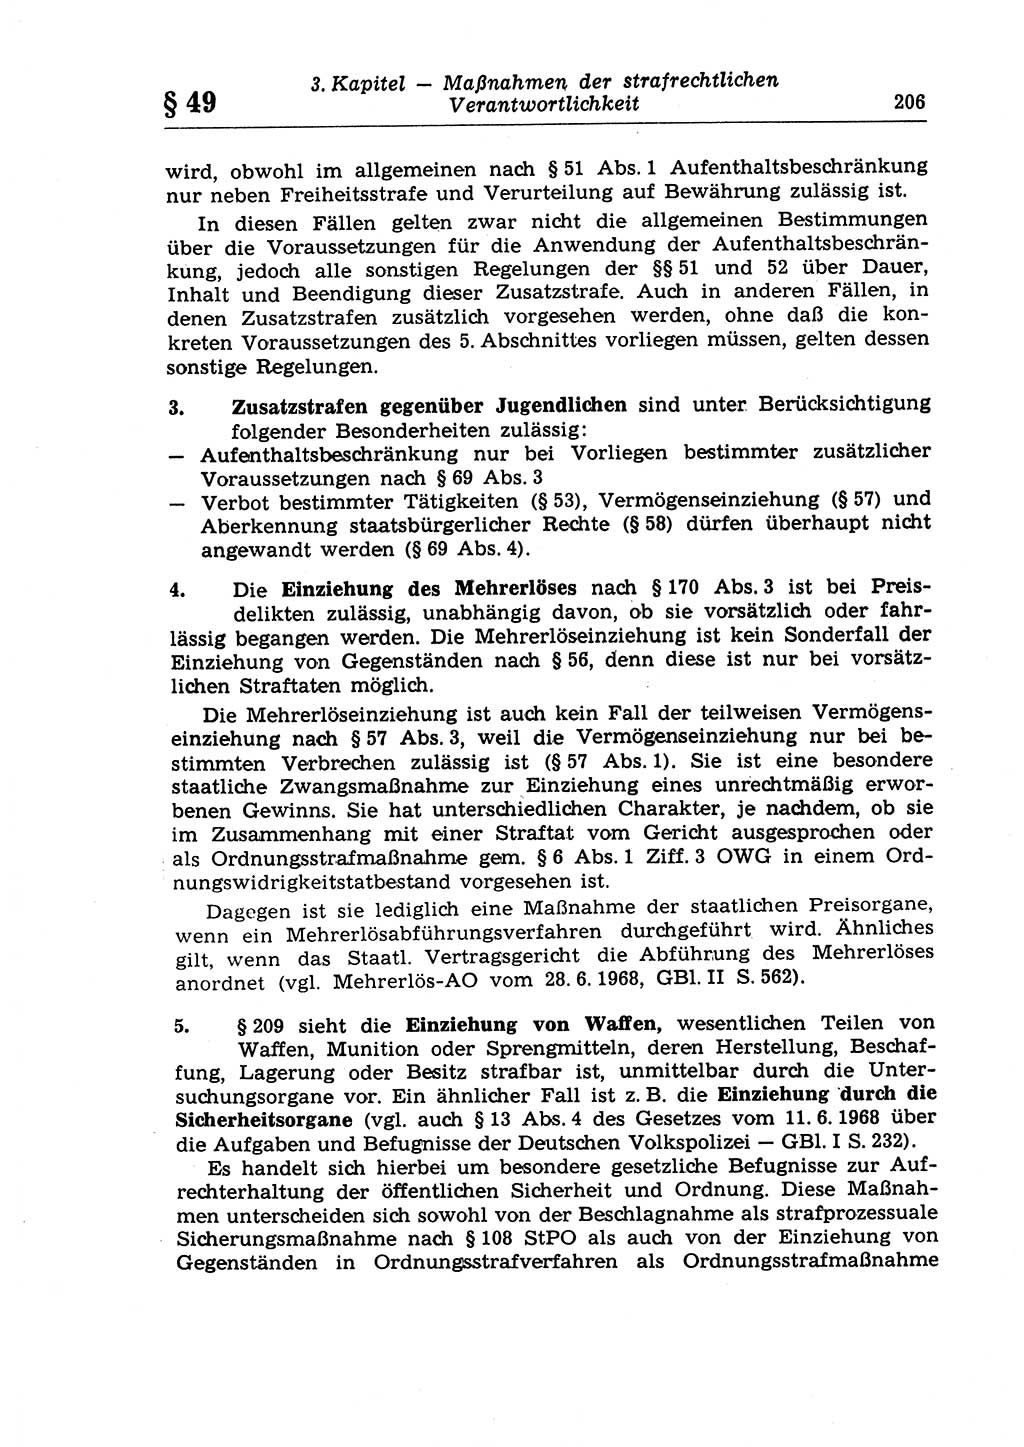 Strafrecht der Deutschen Demokratischen Republik (DDR), Lehrkommentar zum Strafgesetzbuch (StGB), Allgemeiner Teil 1970, Seite 206 (Strafr. DDR Lehrkomm. StGB AT 1970, S. 206)